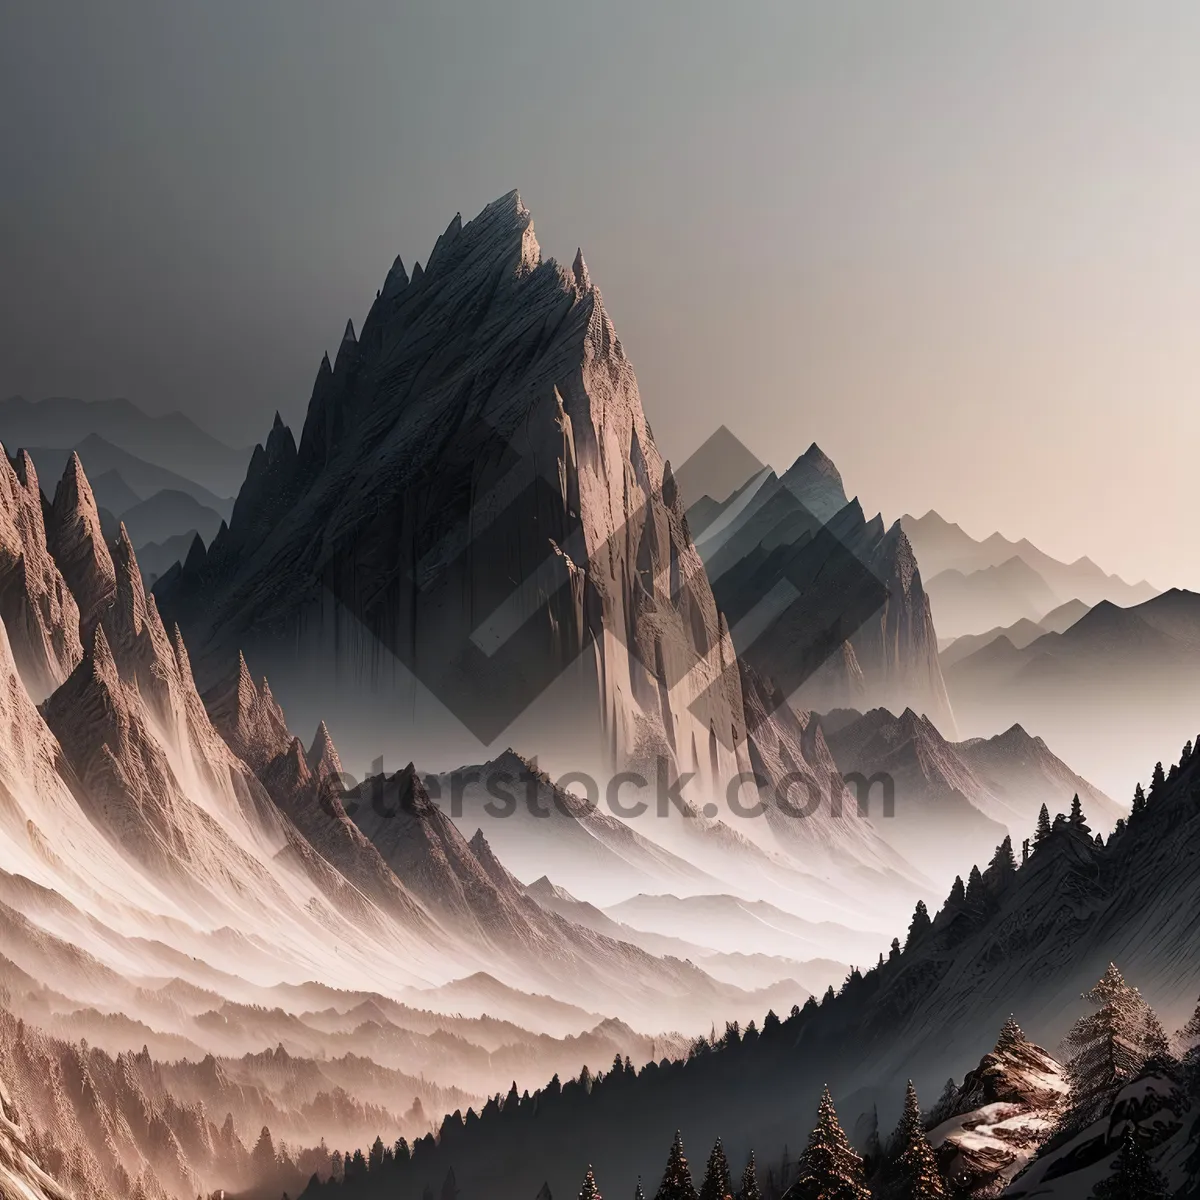 Picture of Snow-capped Glacier Peak in Majestic Alpine Landscape